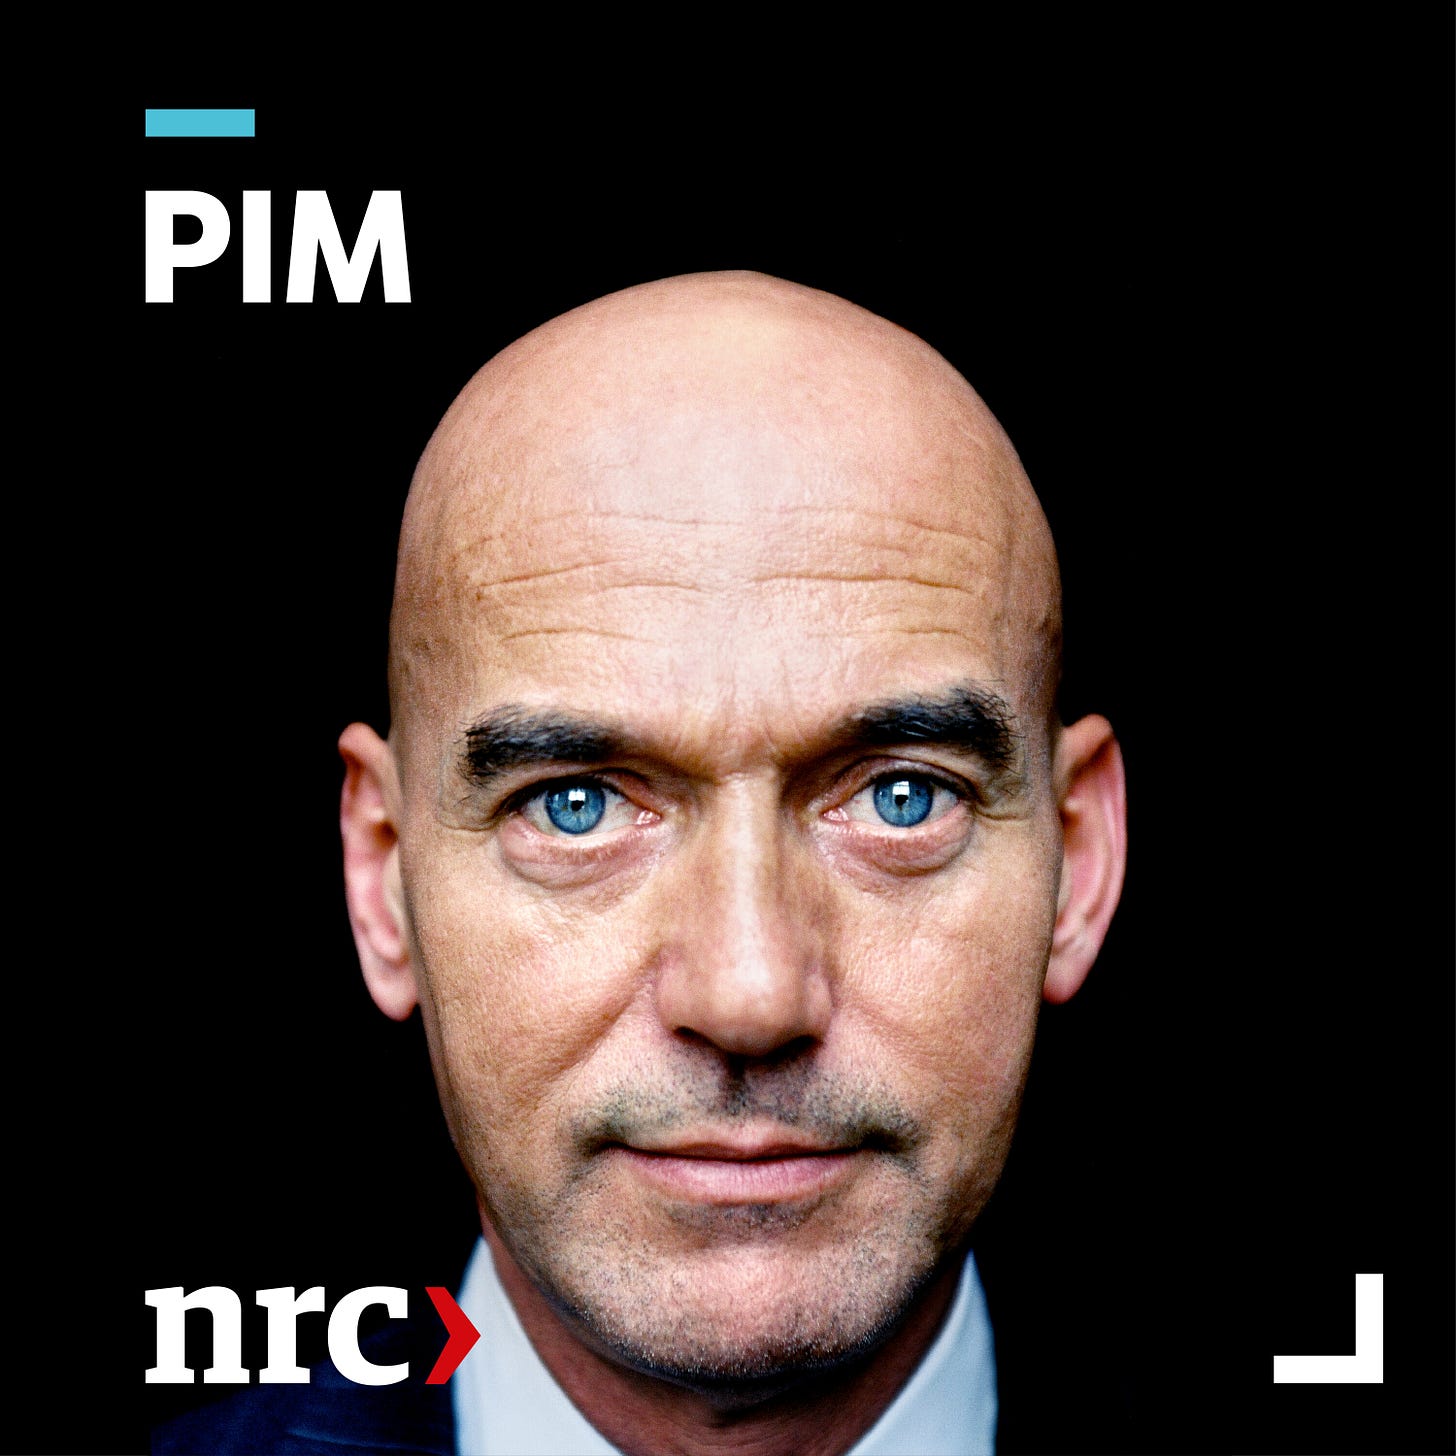 Artwork van Pim, de podcast van NRC. Je ziet de bekende foto van het kale hoofd van Pim met zijn blonde ogen met zwarte achtergrond. Het logo van NRC staat linksonder, de titel PIM in witte hoofdletters rechtsboven